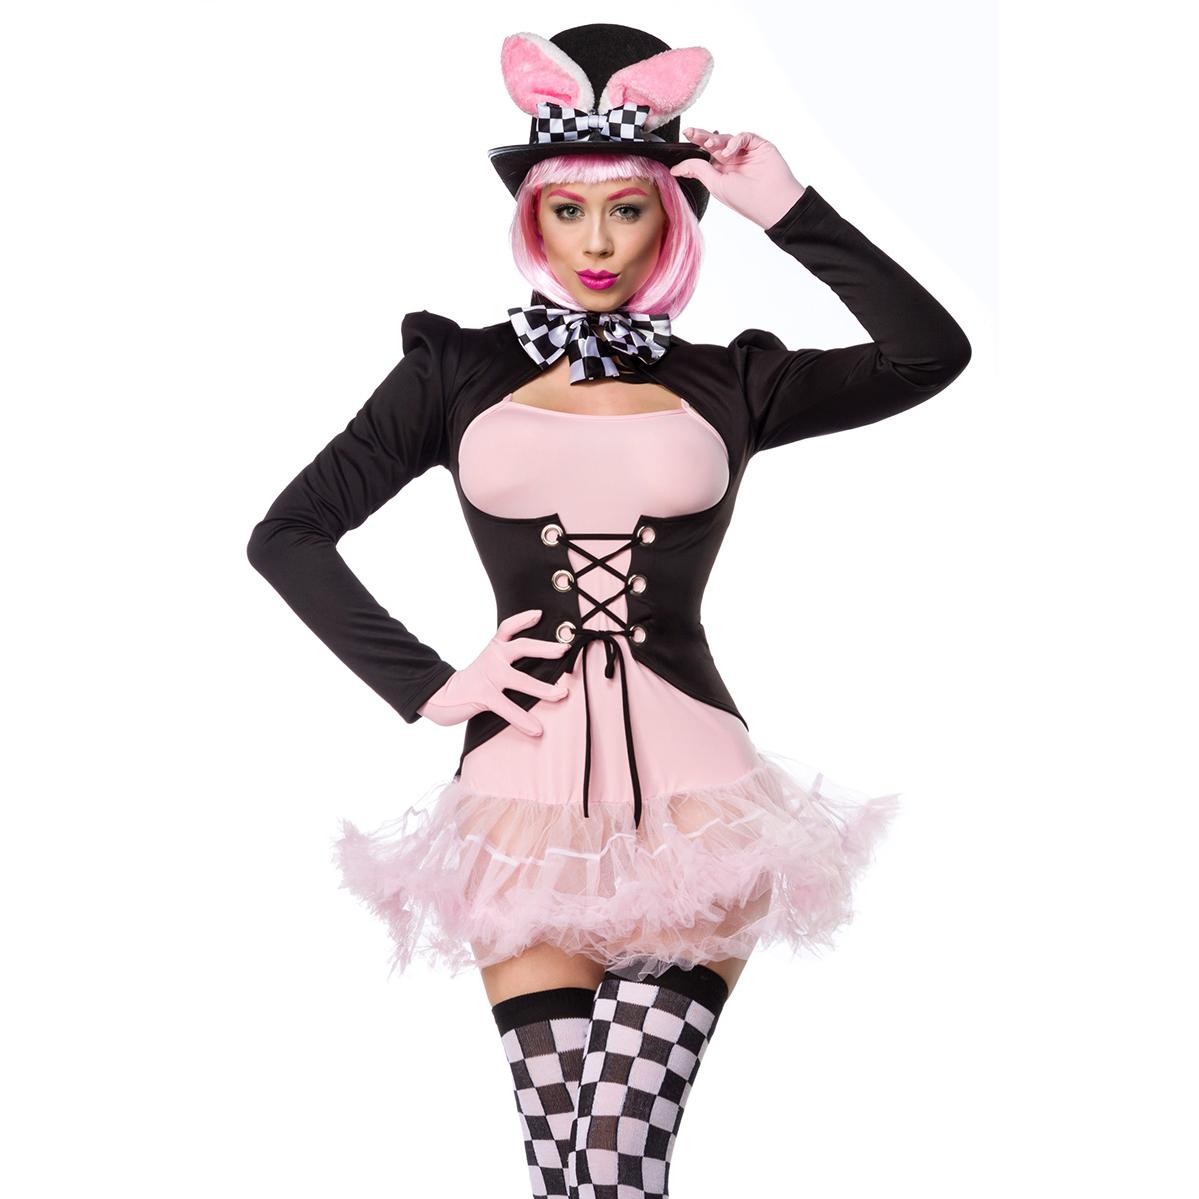  Mask  Paradise  -  Pink  Rabbit  Kostümset  -  schwarz/weiß/rosa 